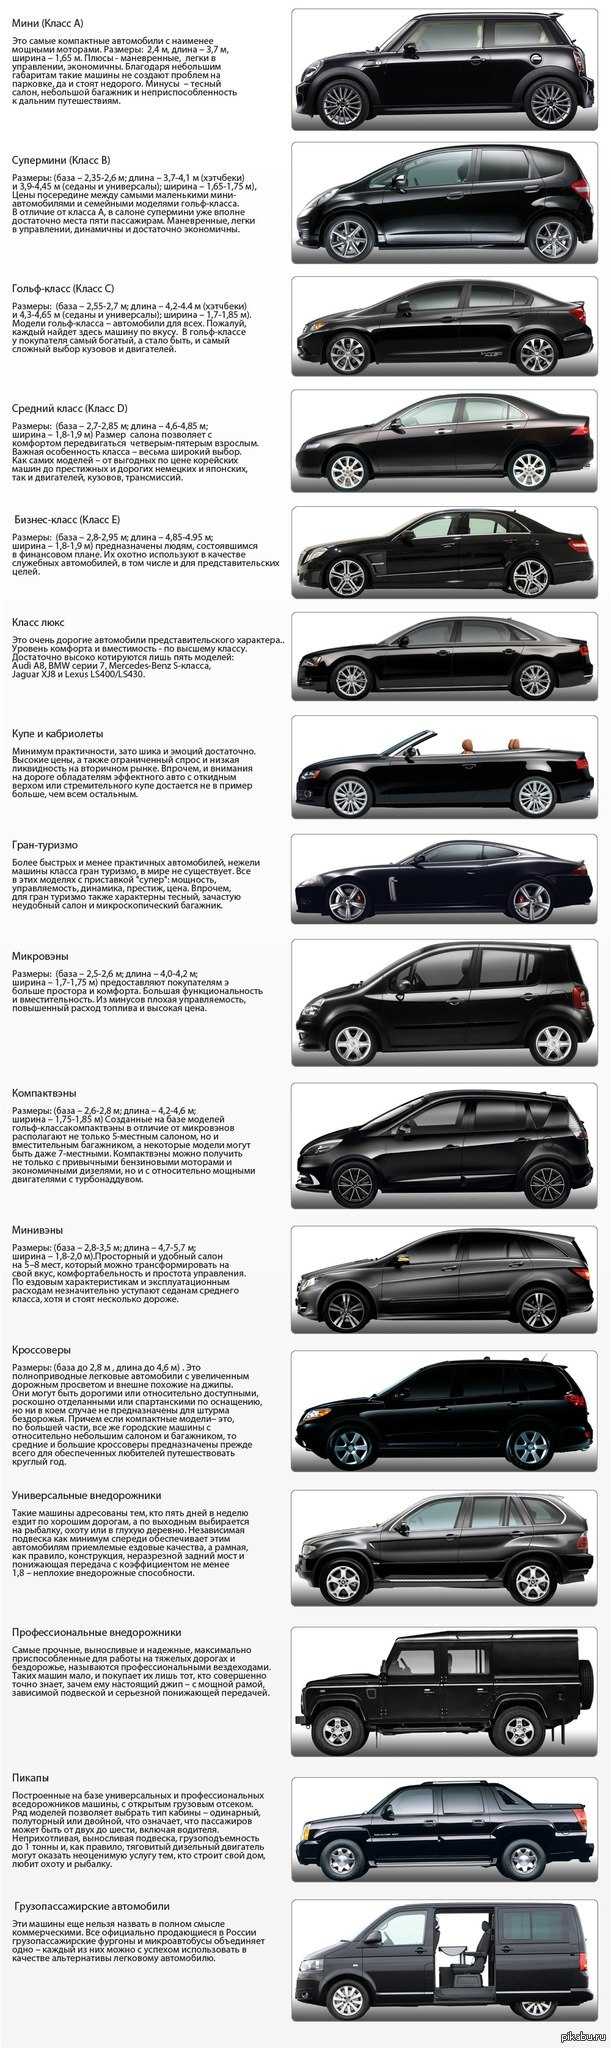 Автомобили премиум-класса (список и обзор лучших моделей)